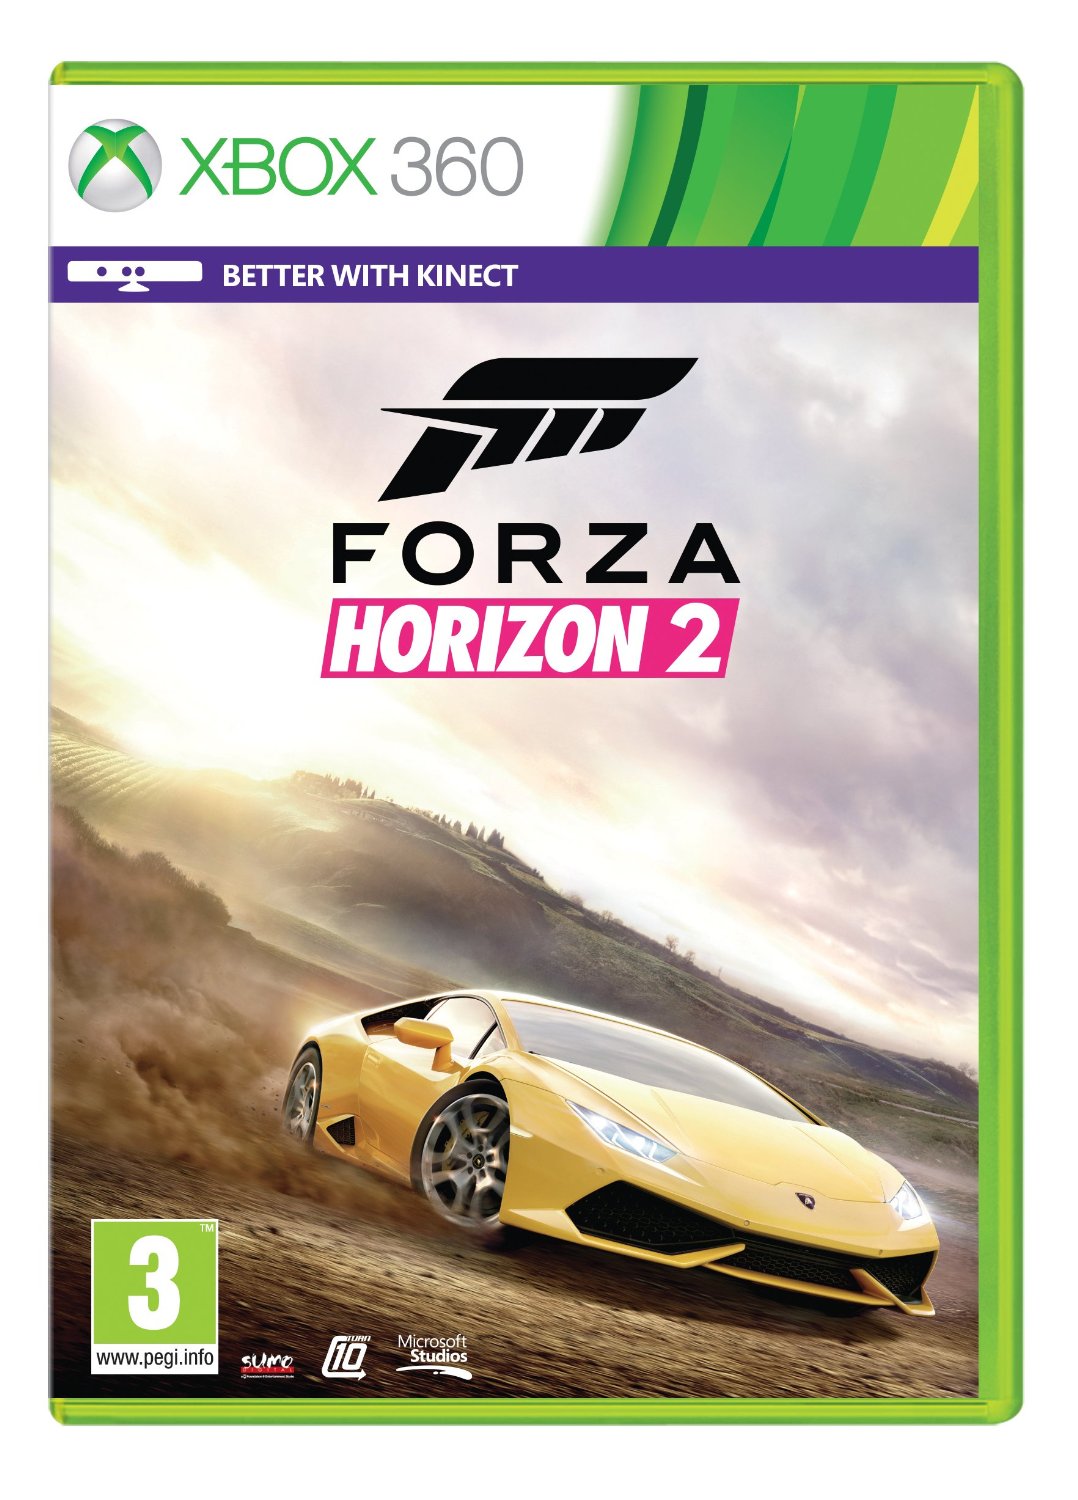 XB360 Forza Horizon 2 